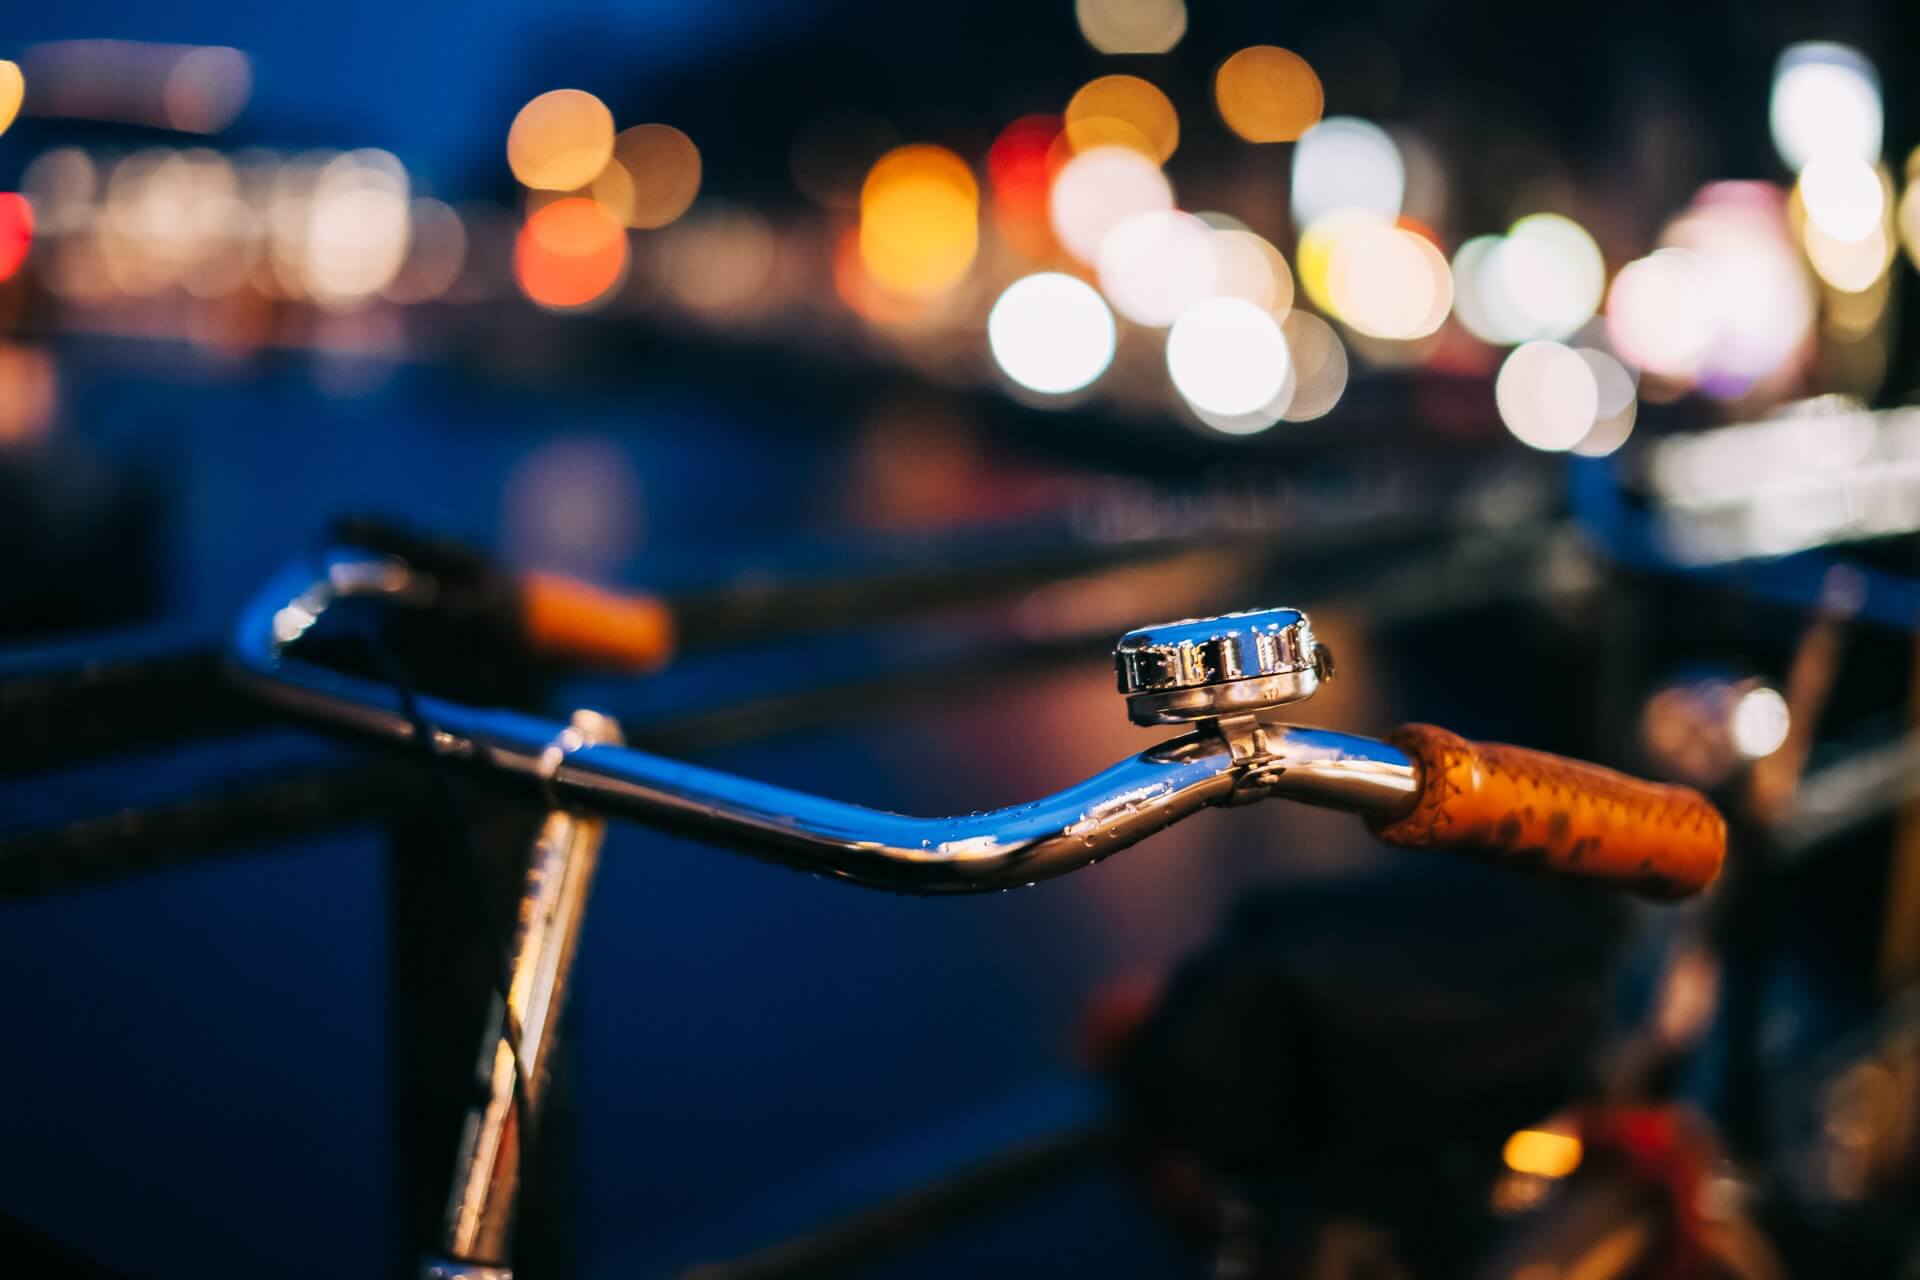 bicycle-handlebars-at-night